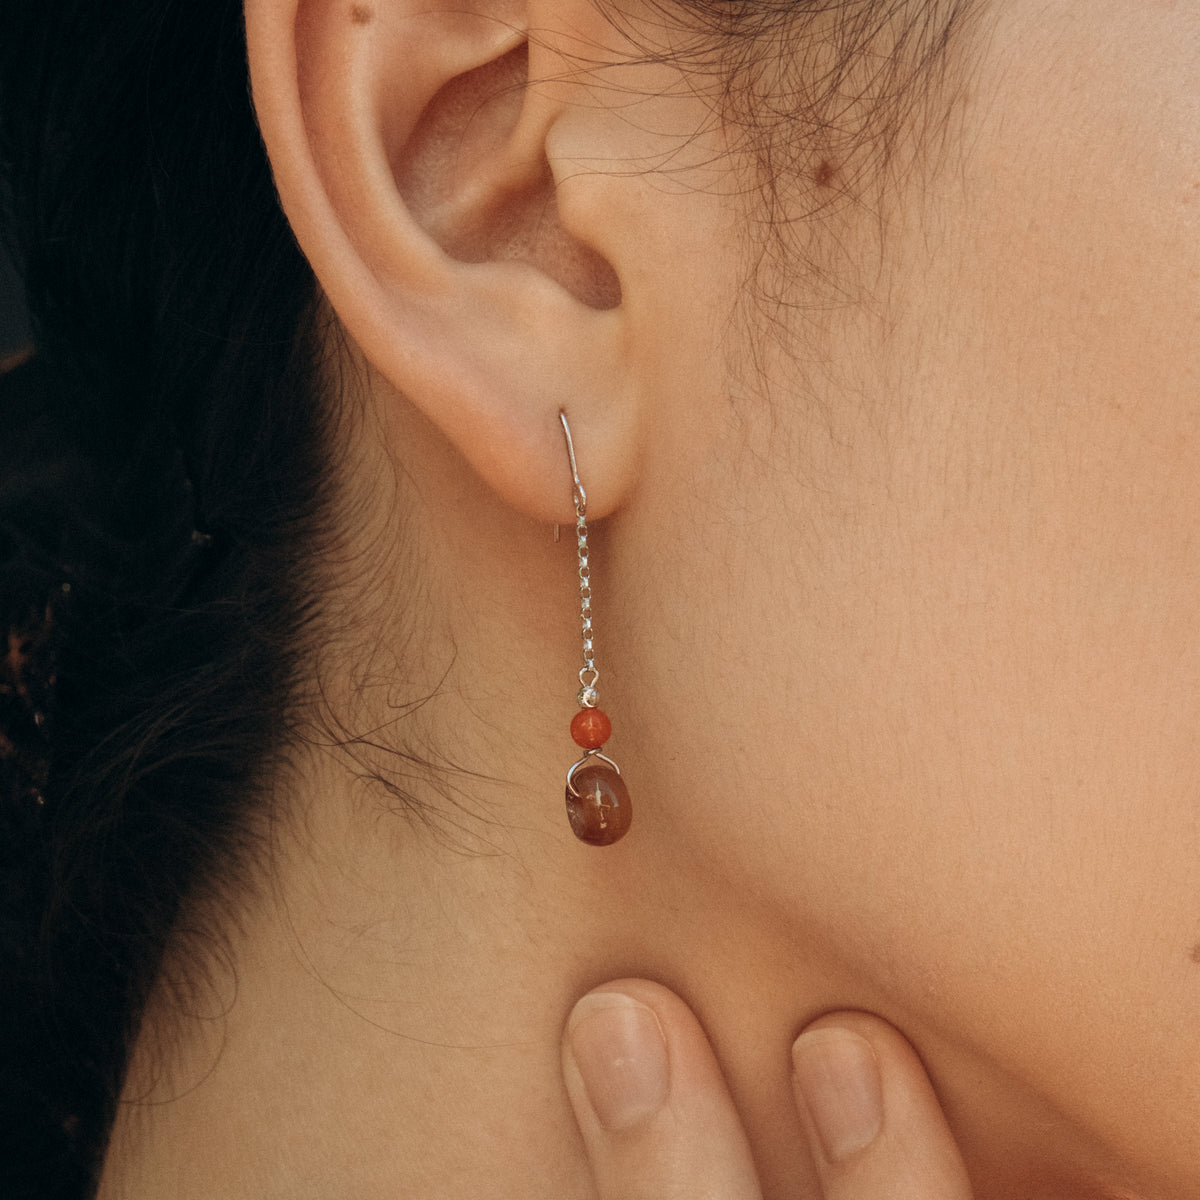 Red jadeite earring